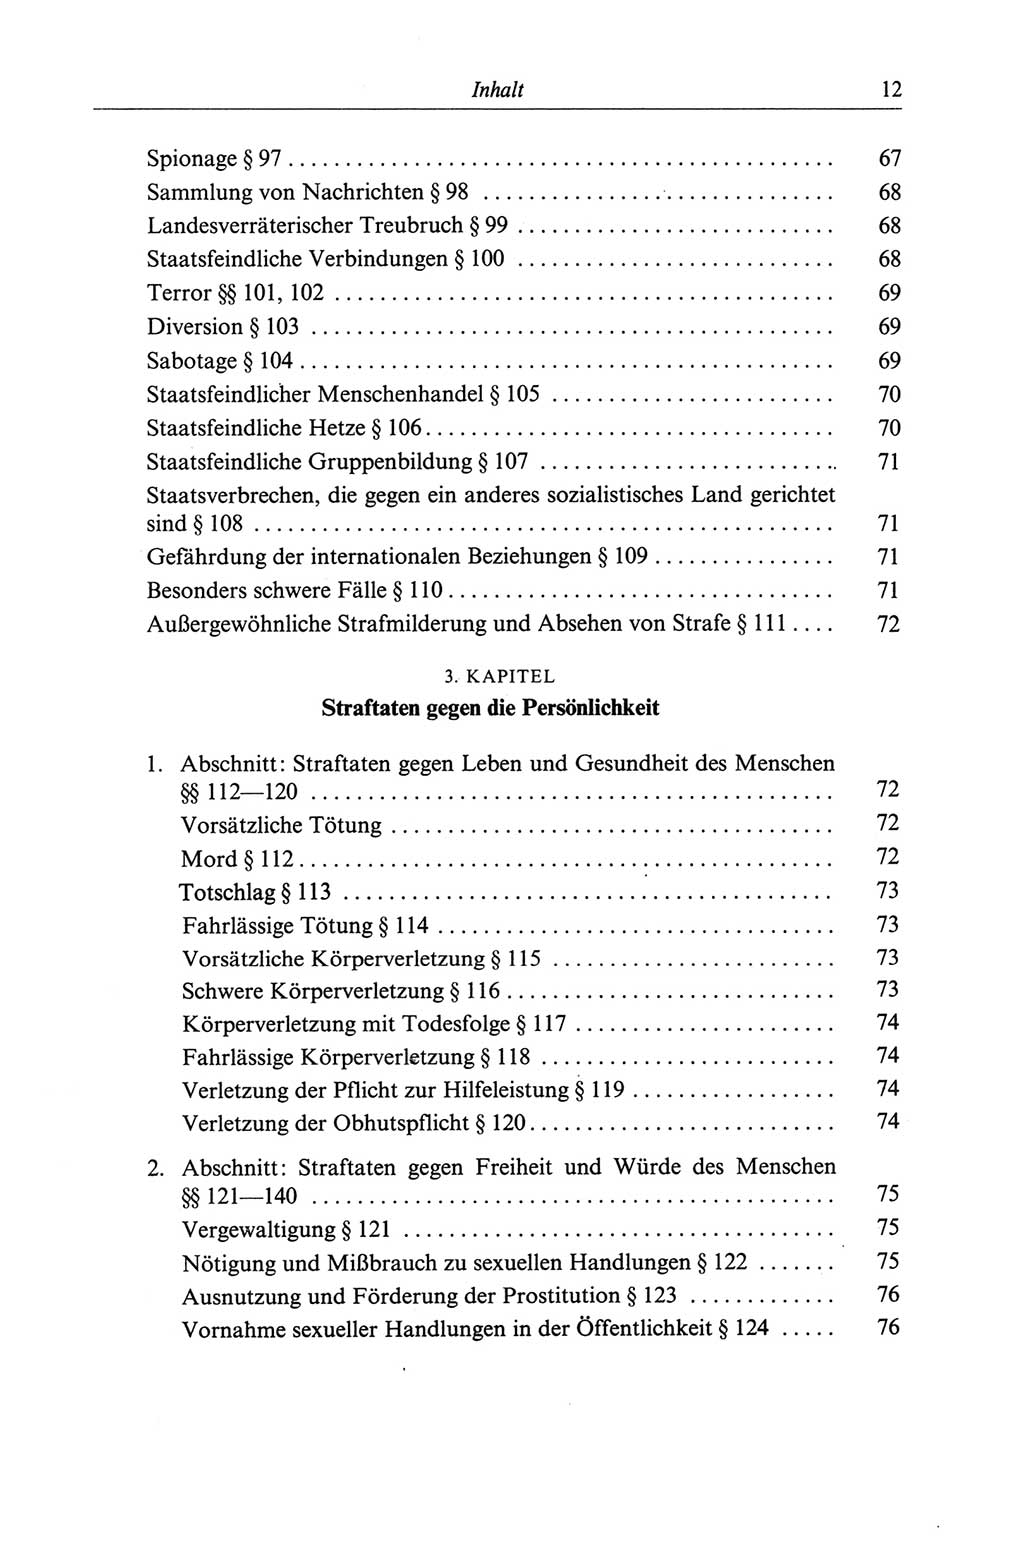 Strafgesetzbuch (StGB) der Deutschen Demokratischen Republik (DDR) und angrenzende Gesetze und Bestimmungen 1968, Seite 12 (StGB Ges. Best. DDR 1968, S. 12)